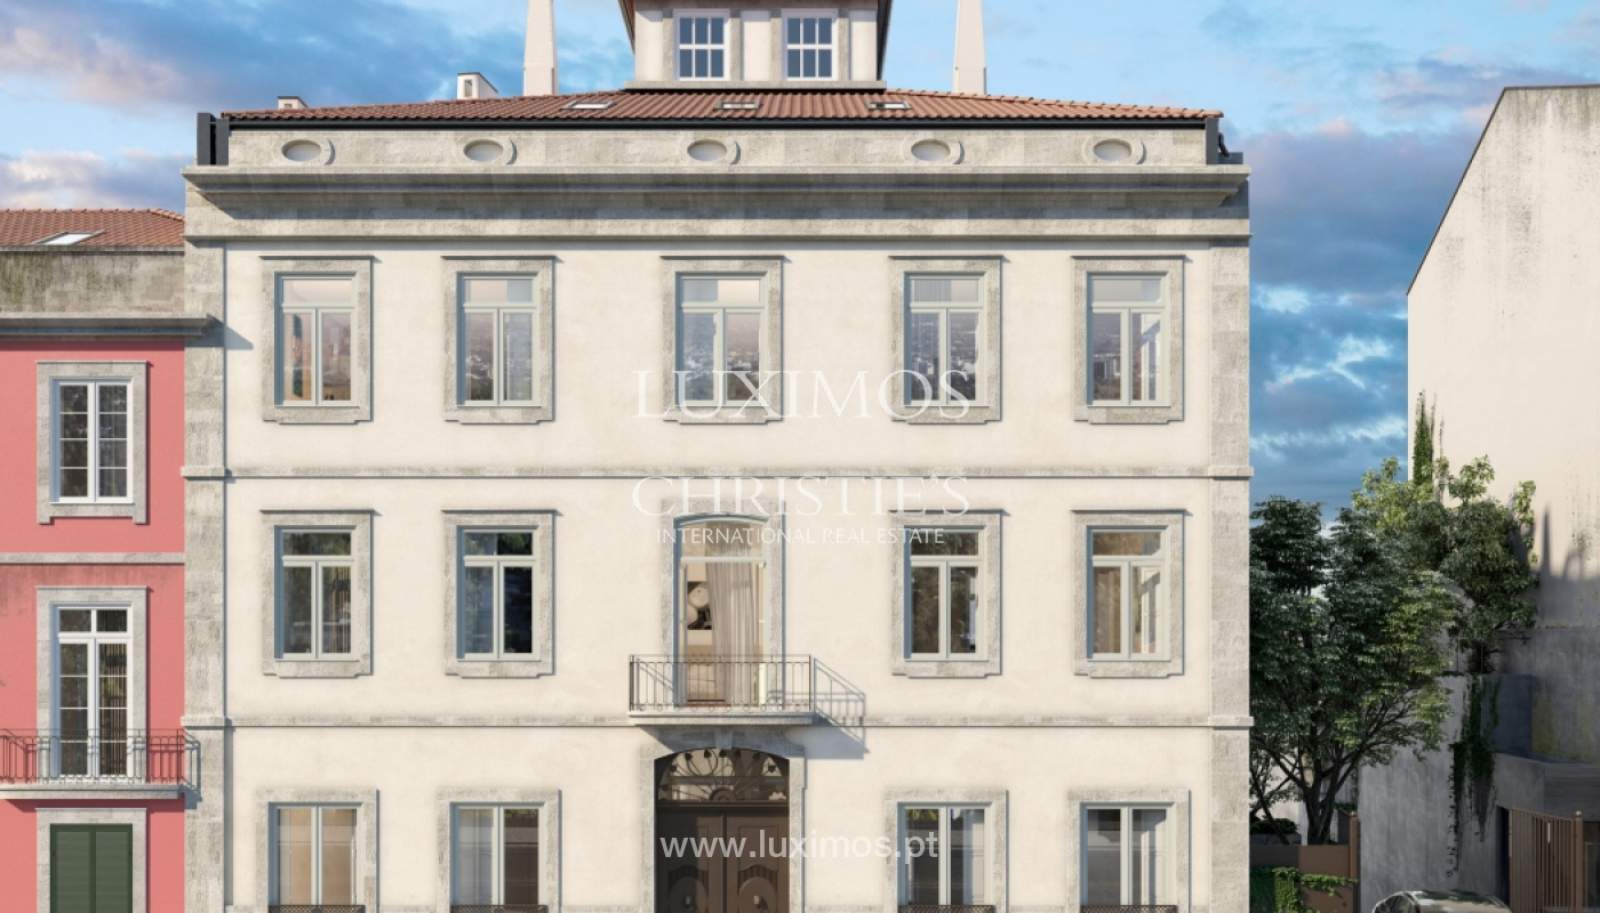 Venda de apartamento novo em empreendimento de luxo, Cedofeita, Porto_161688